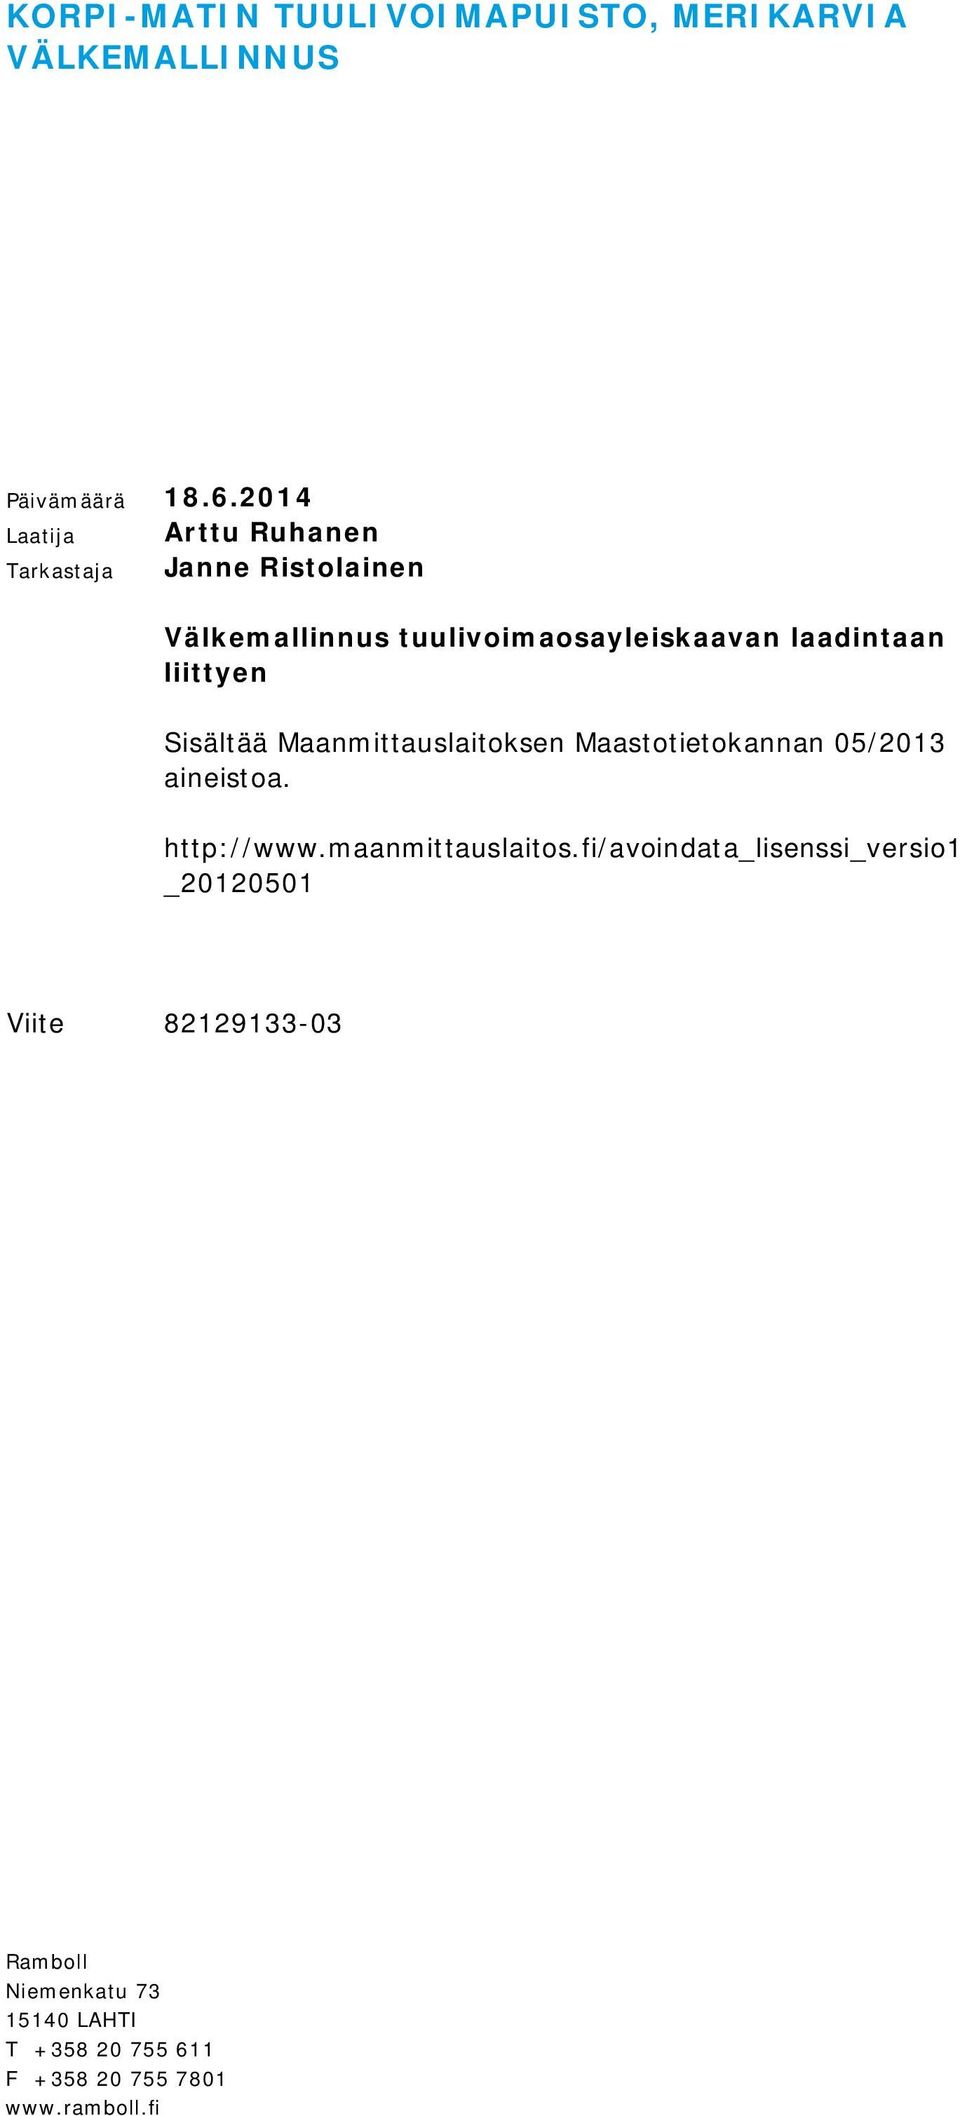 liittyen Sisältää Maanmittauslaitoksen Maastotietokannan 05/2013 aineistoa. http://www.maanmittauslaitos.